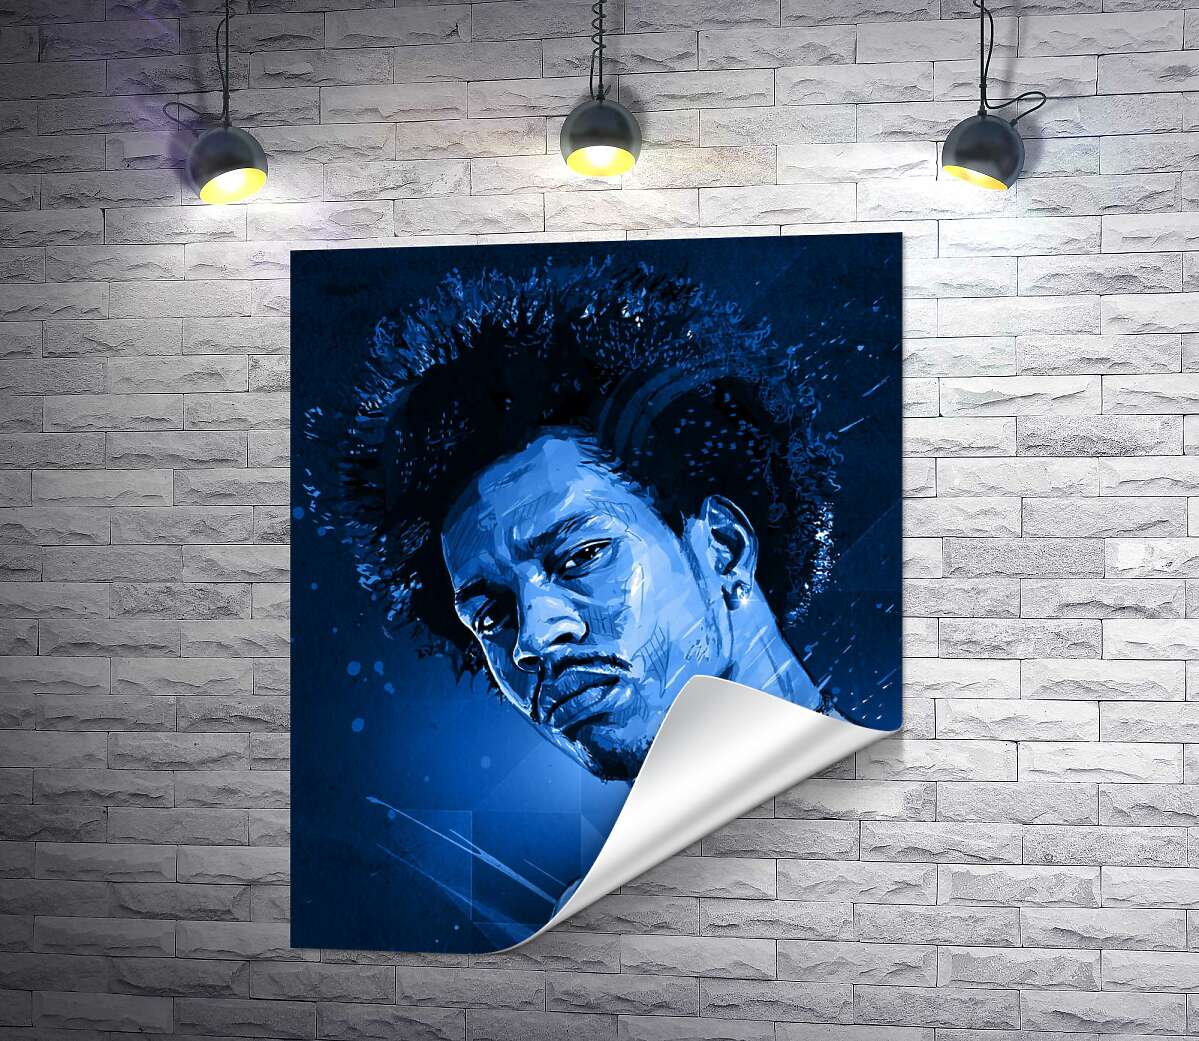 печать Синие оттенки портрета американского гитариста Джими Хендрикса (Jimi Hendrix)